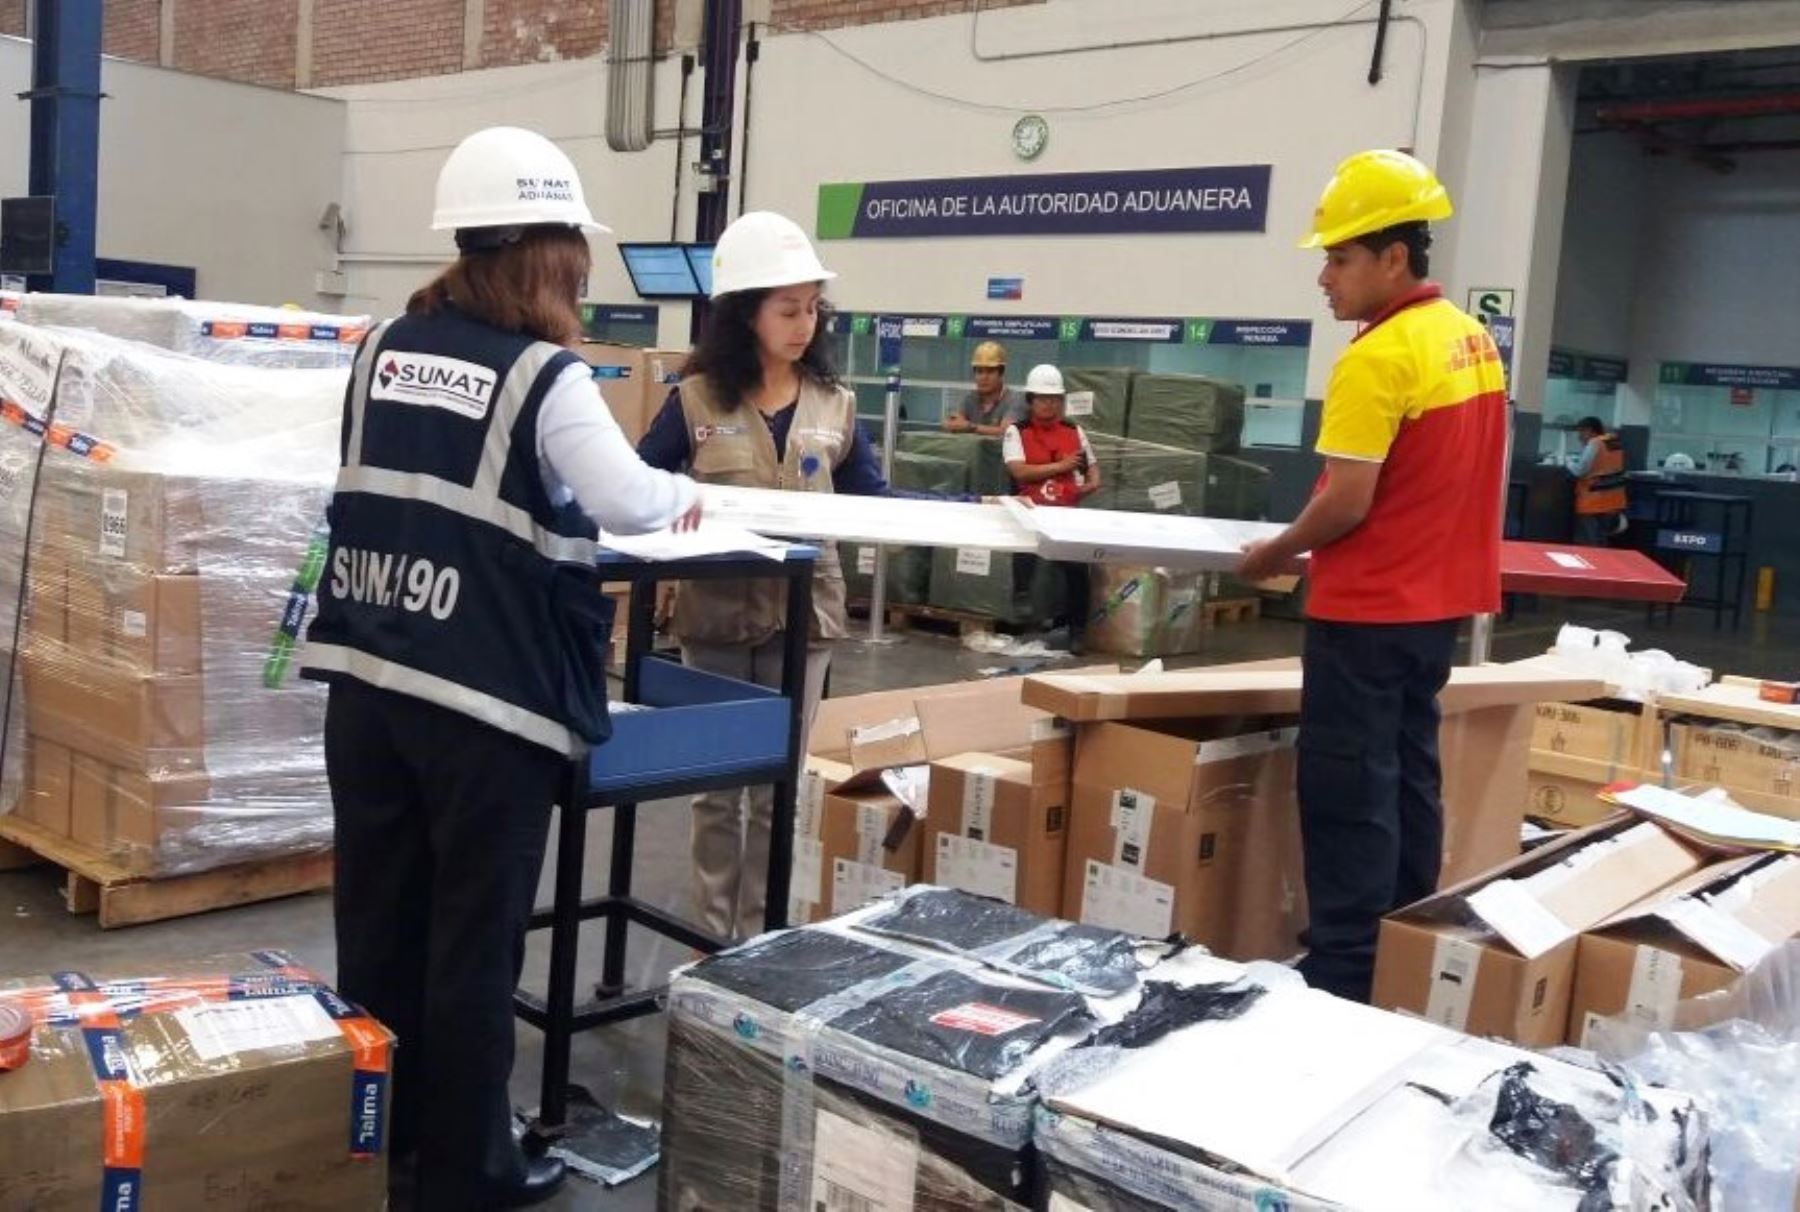 SUNAT: Despacho aduanero electrónico reduce tiempo y trámites de importaciones | Noticias | Agencia Peruana de Noticias Andina